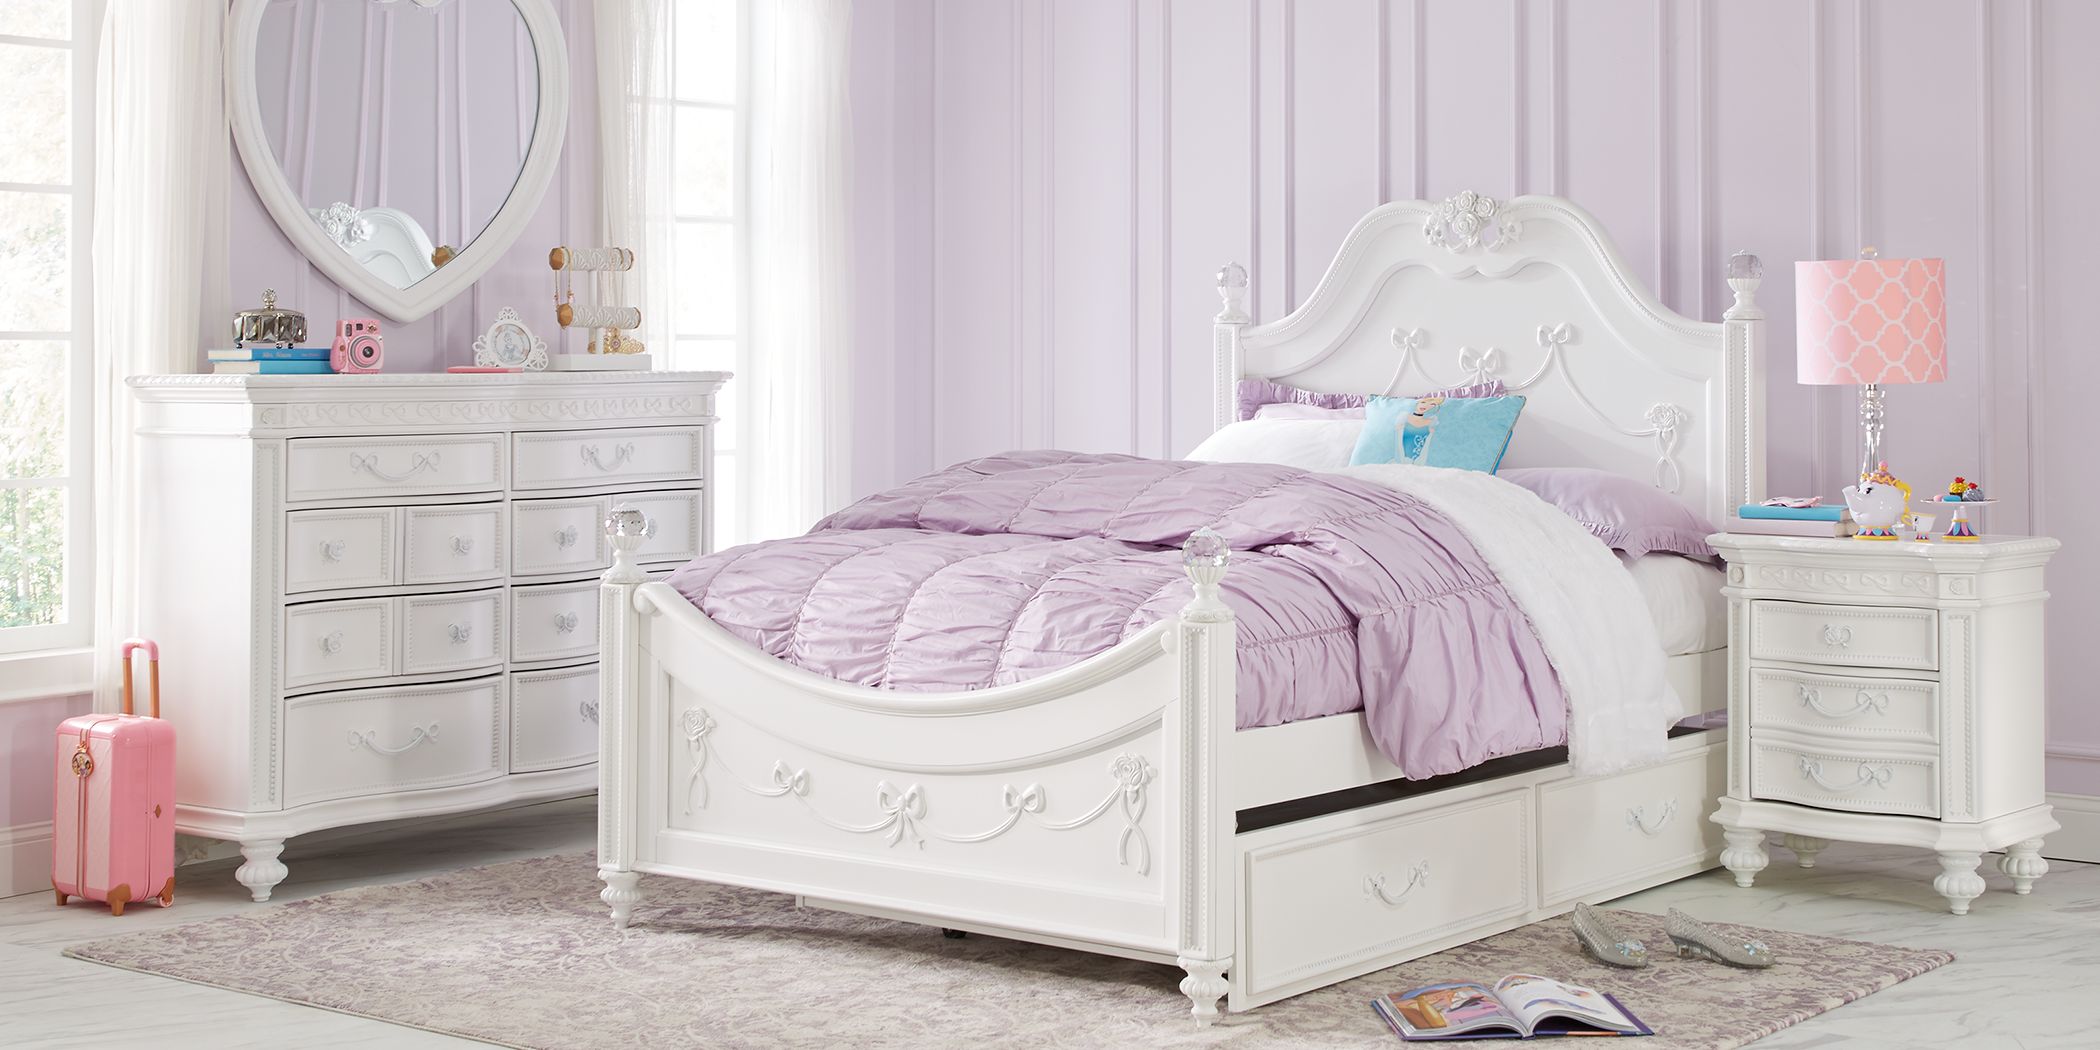 disney princess bunk bed